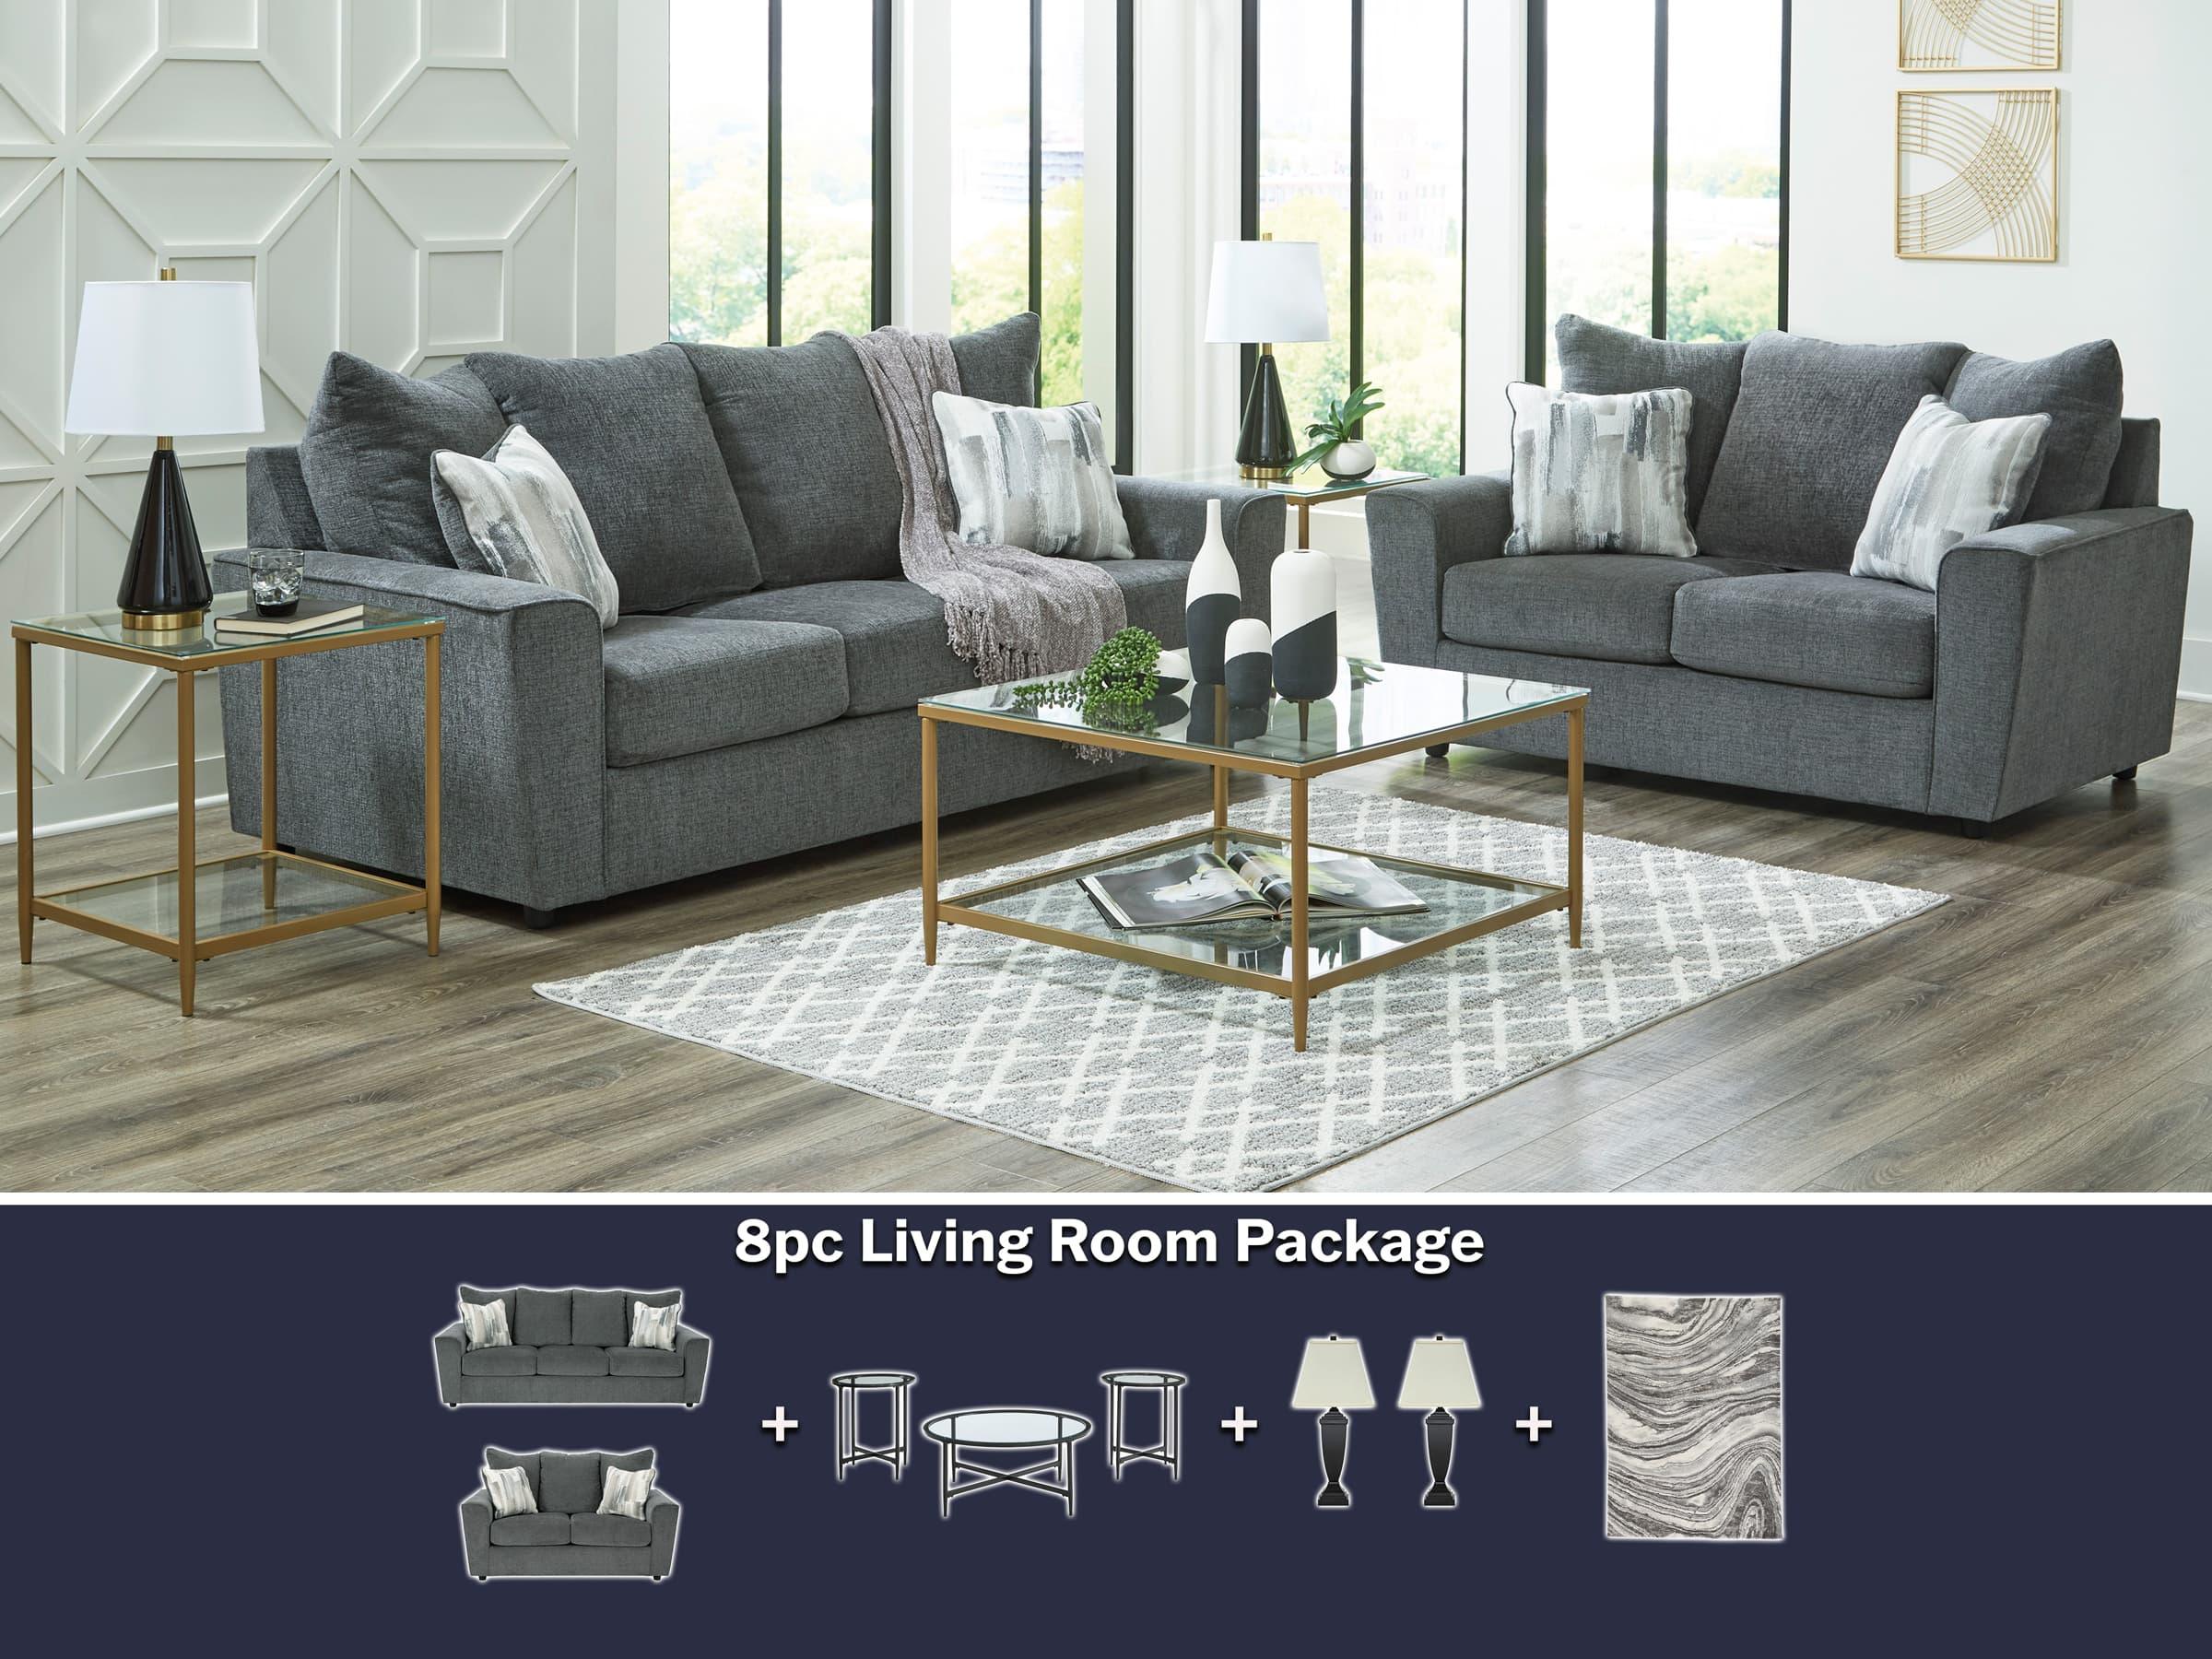 5th Avenue Furniture - Stairatt 8pc Package Deal - 5th Avenue Furniture